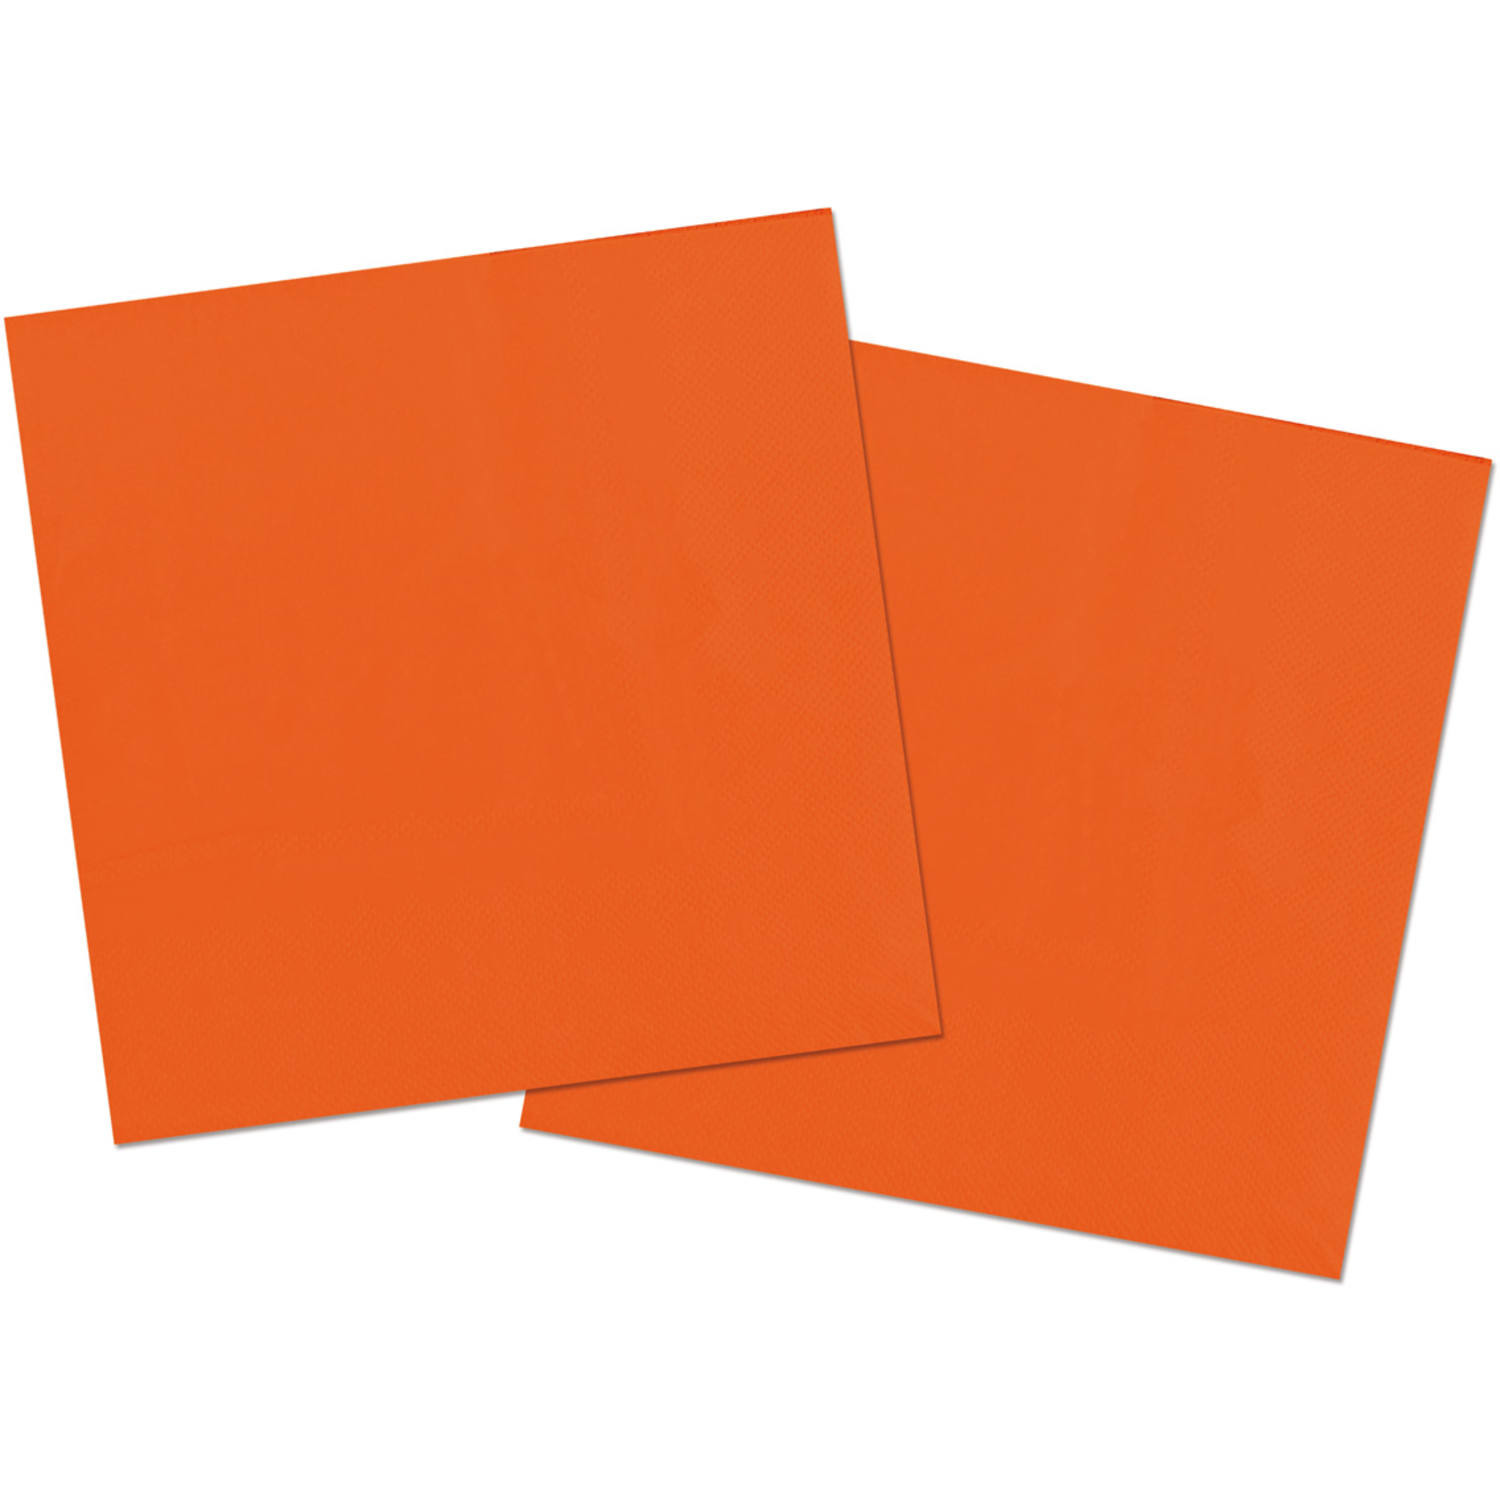 20x stuks servetten van papier oranje 33 x 33 cm